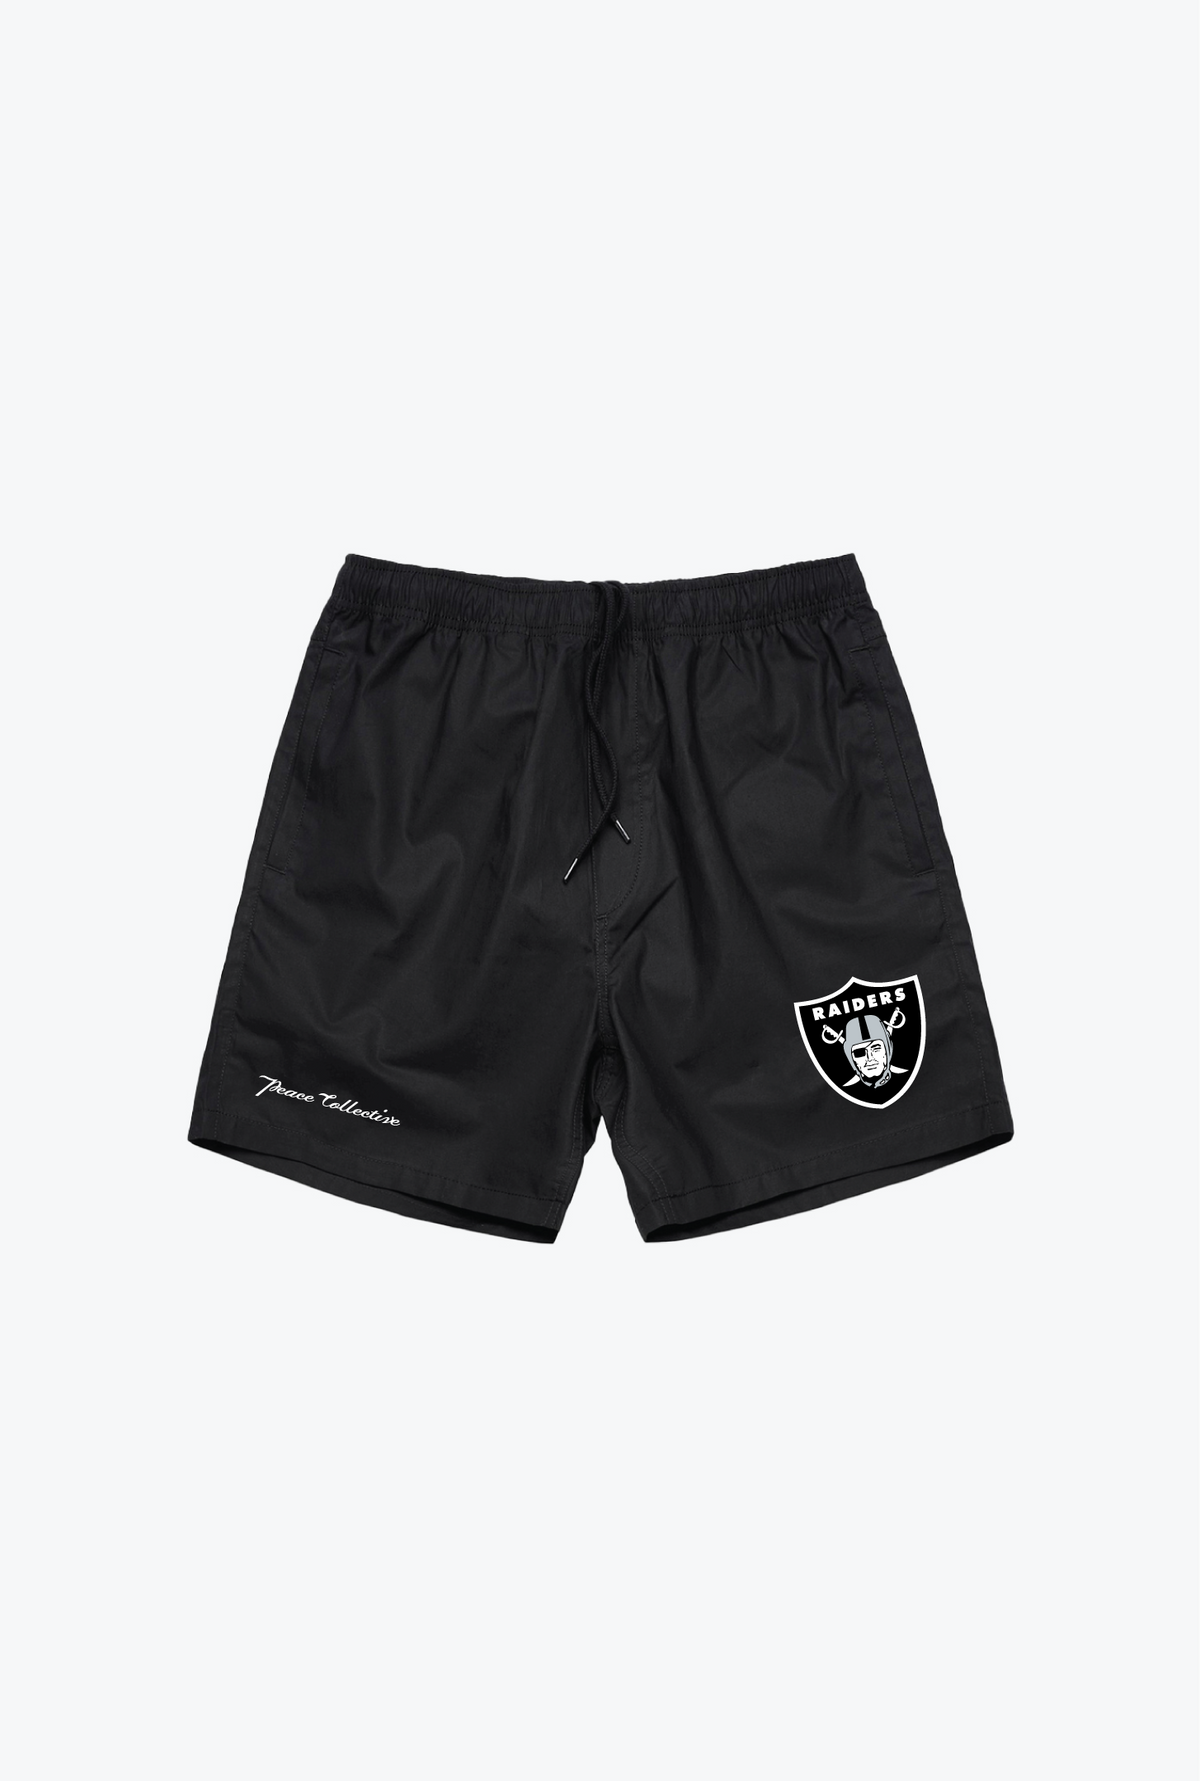 Las Vegas Raiders Board Shorts - Black